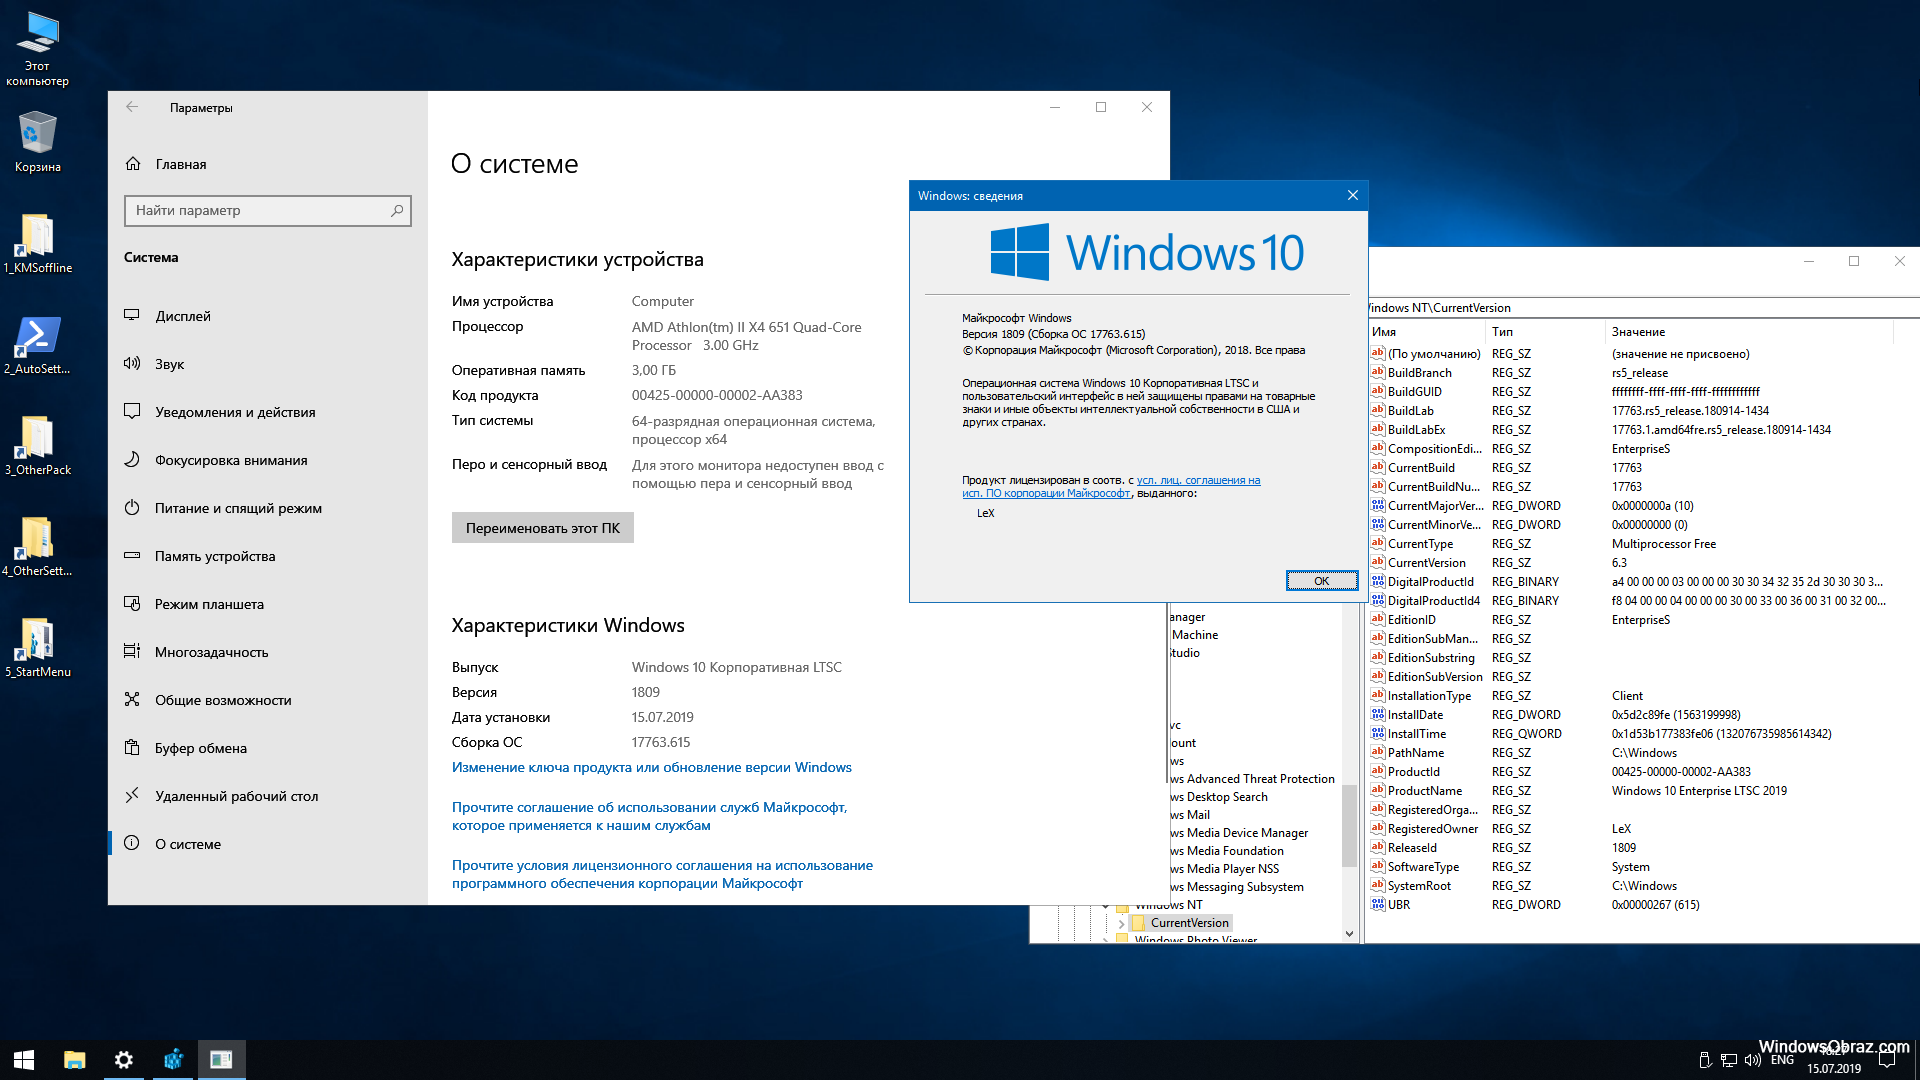 Windows 10 64 bit 2024. Windows 10 корпоративная. Виндовс 10 корпоративная LTSC. Windows 10 Enterprise корпоративная) 64 bit. Windows 10 корпоративная LTSC 2019.